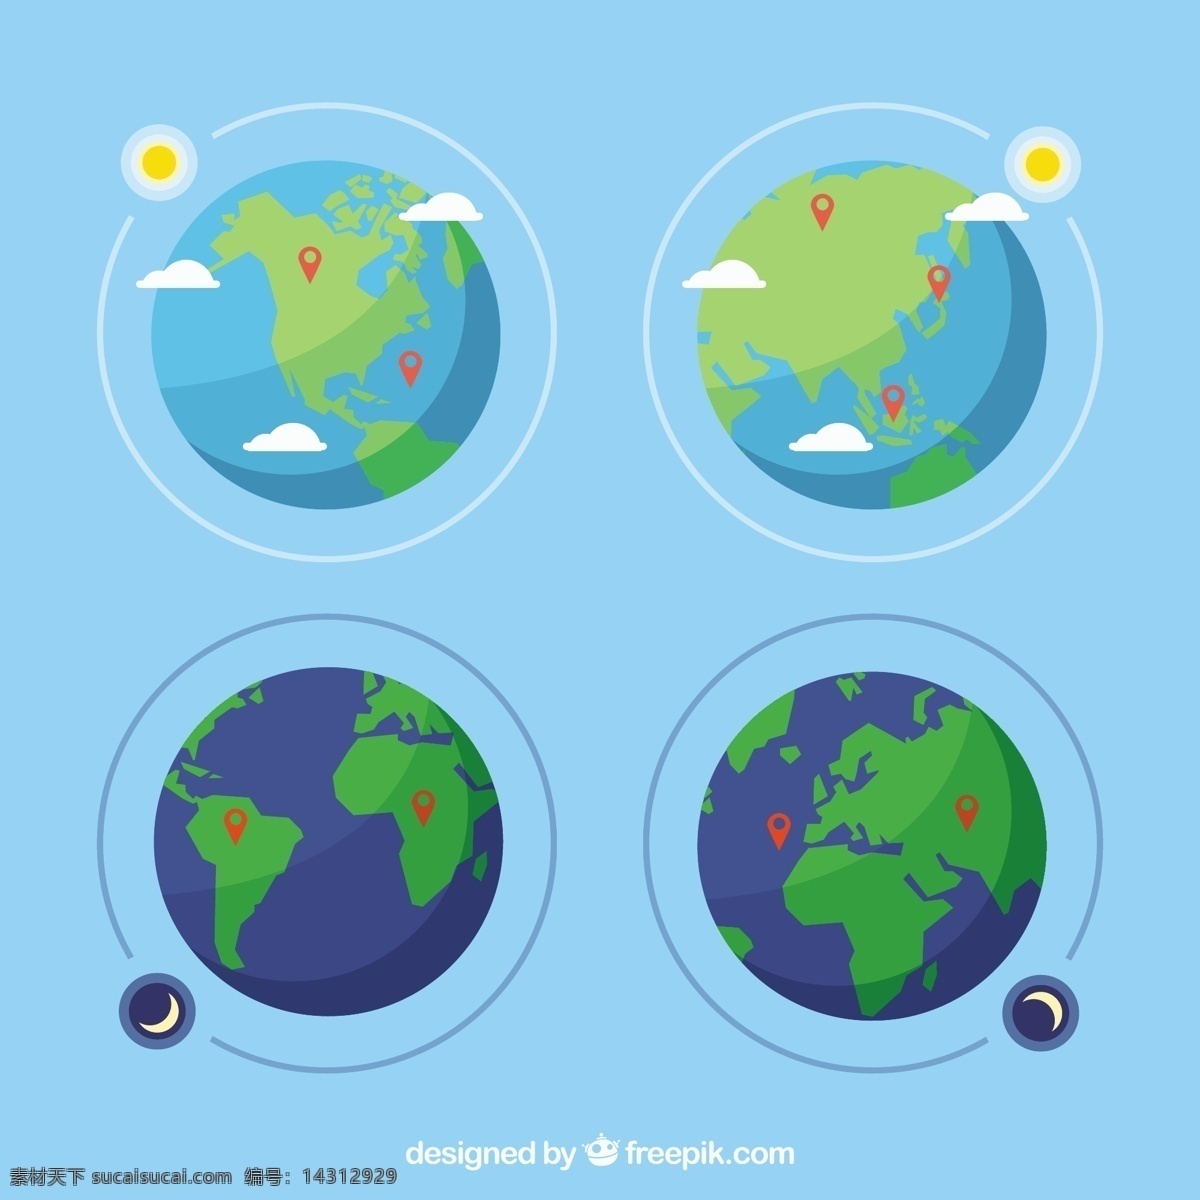 平面 设计图 上 球 销 套 地图 太阳 世界 世界地图 地球 月亮 平 夜 针 行星 平面设计 球体 欧洲 世界地球日 地球日 地球地球仪